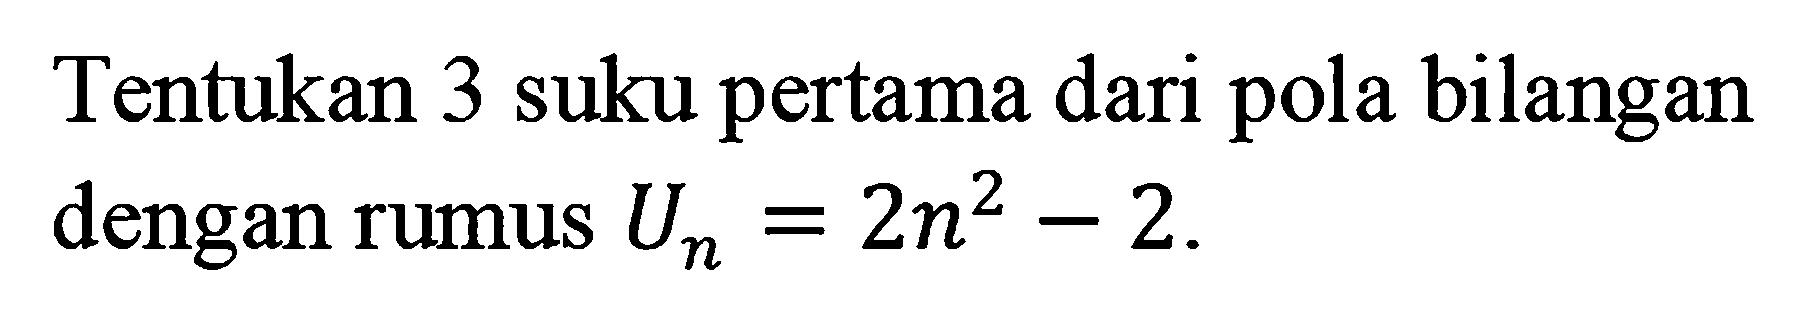 Tentukan 3 suku pertama dari pola bilangan dengan rumus Un = 2n^2 - 2.